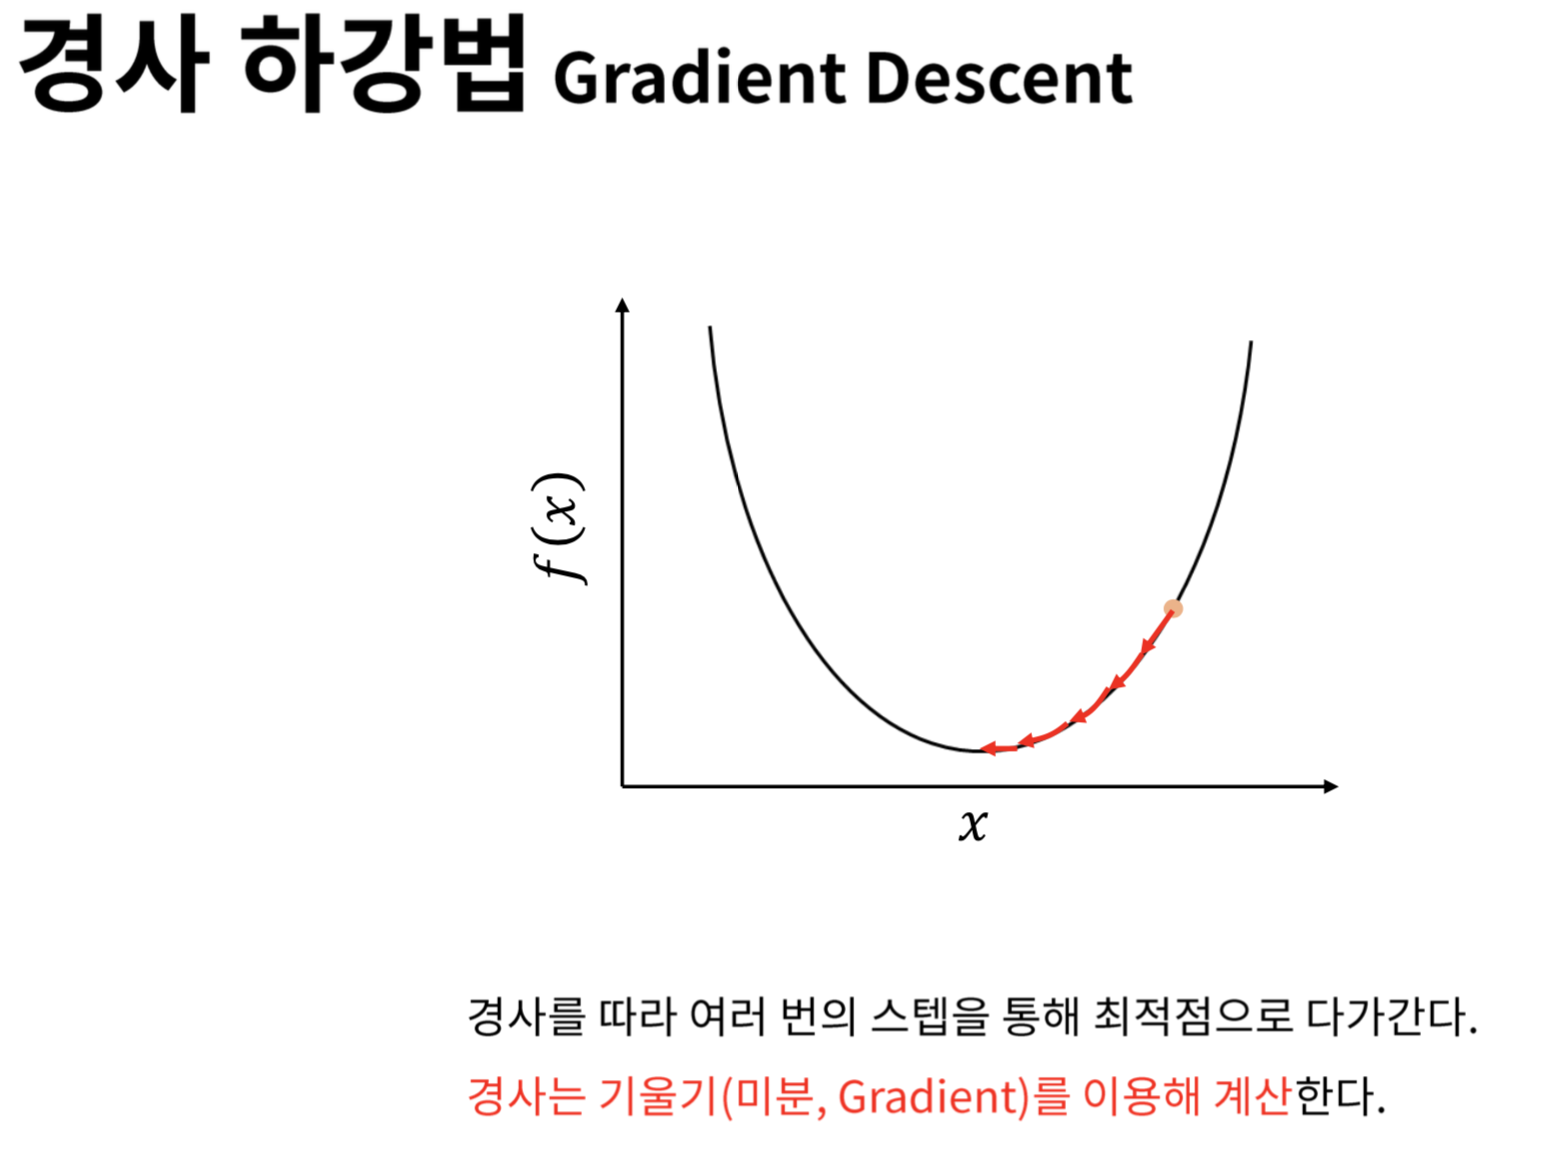 경사하강법(Gradient Descent)